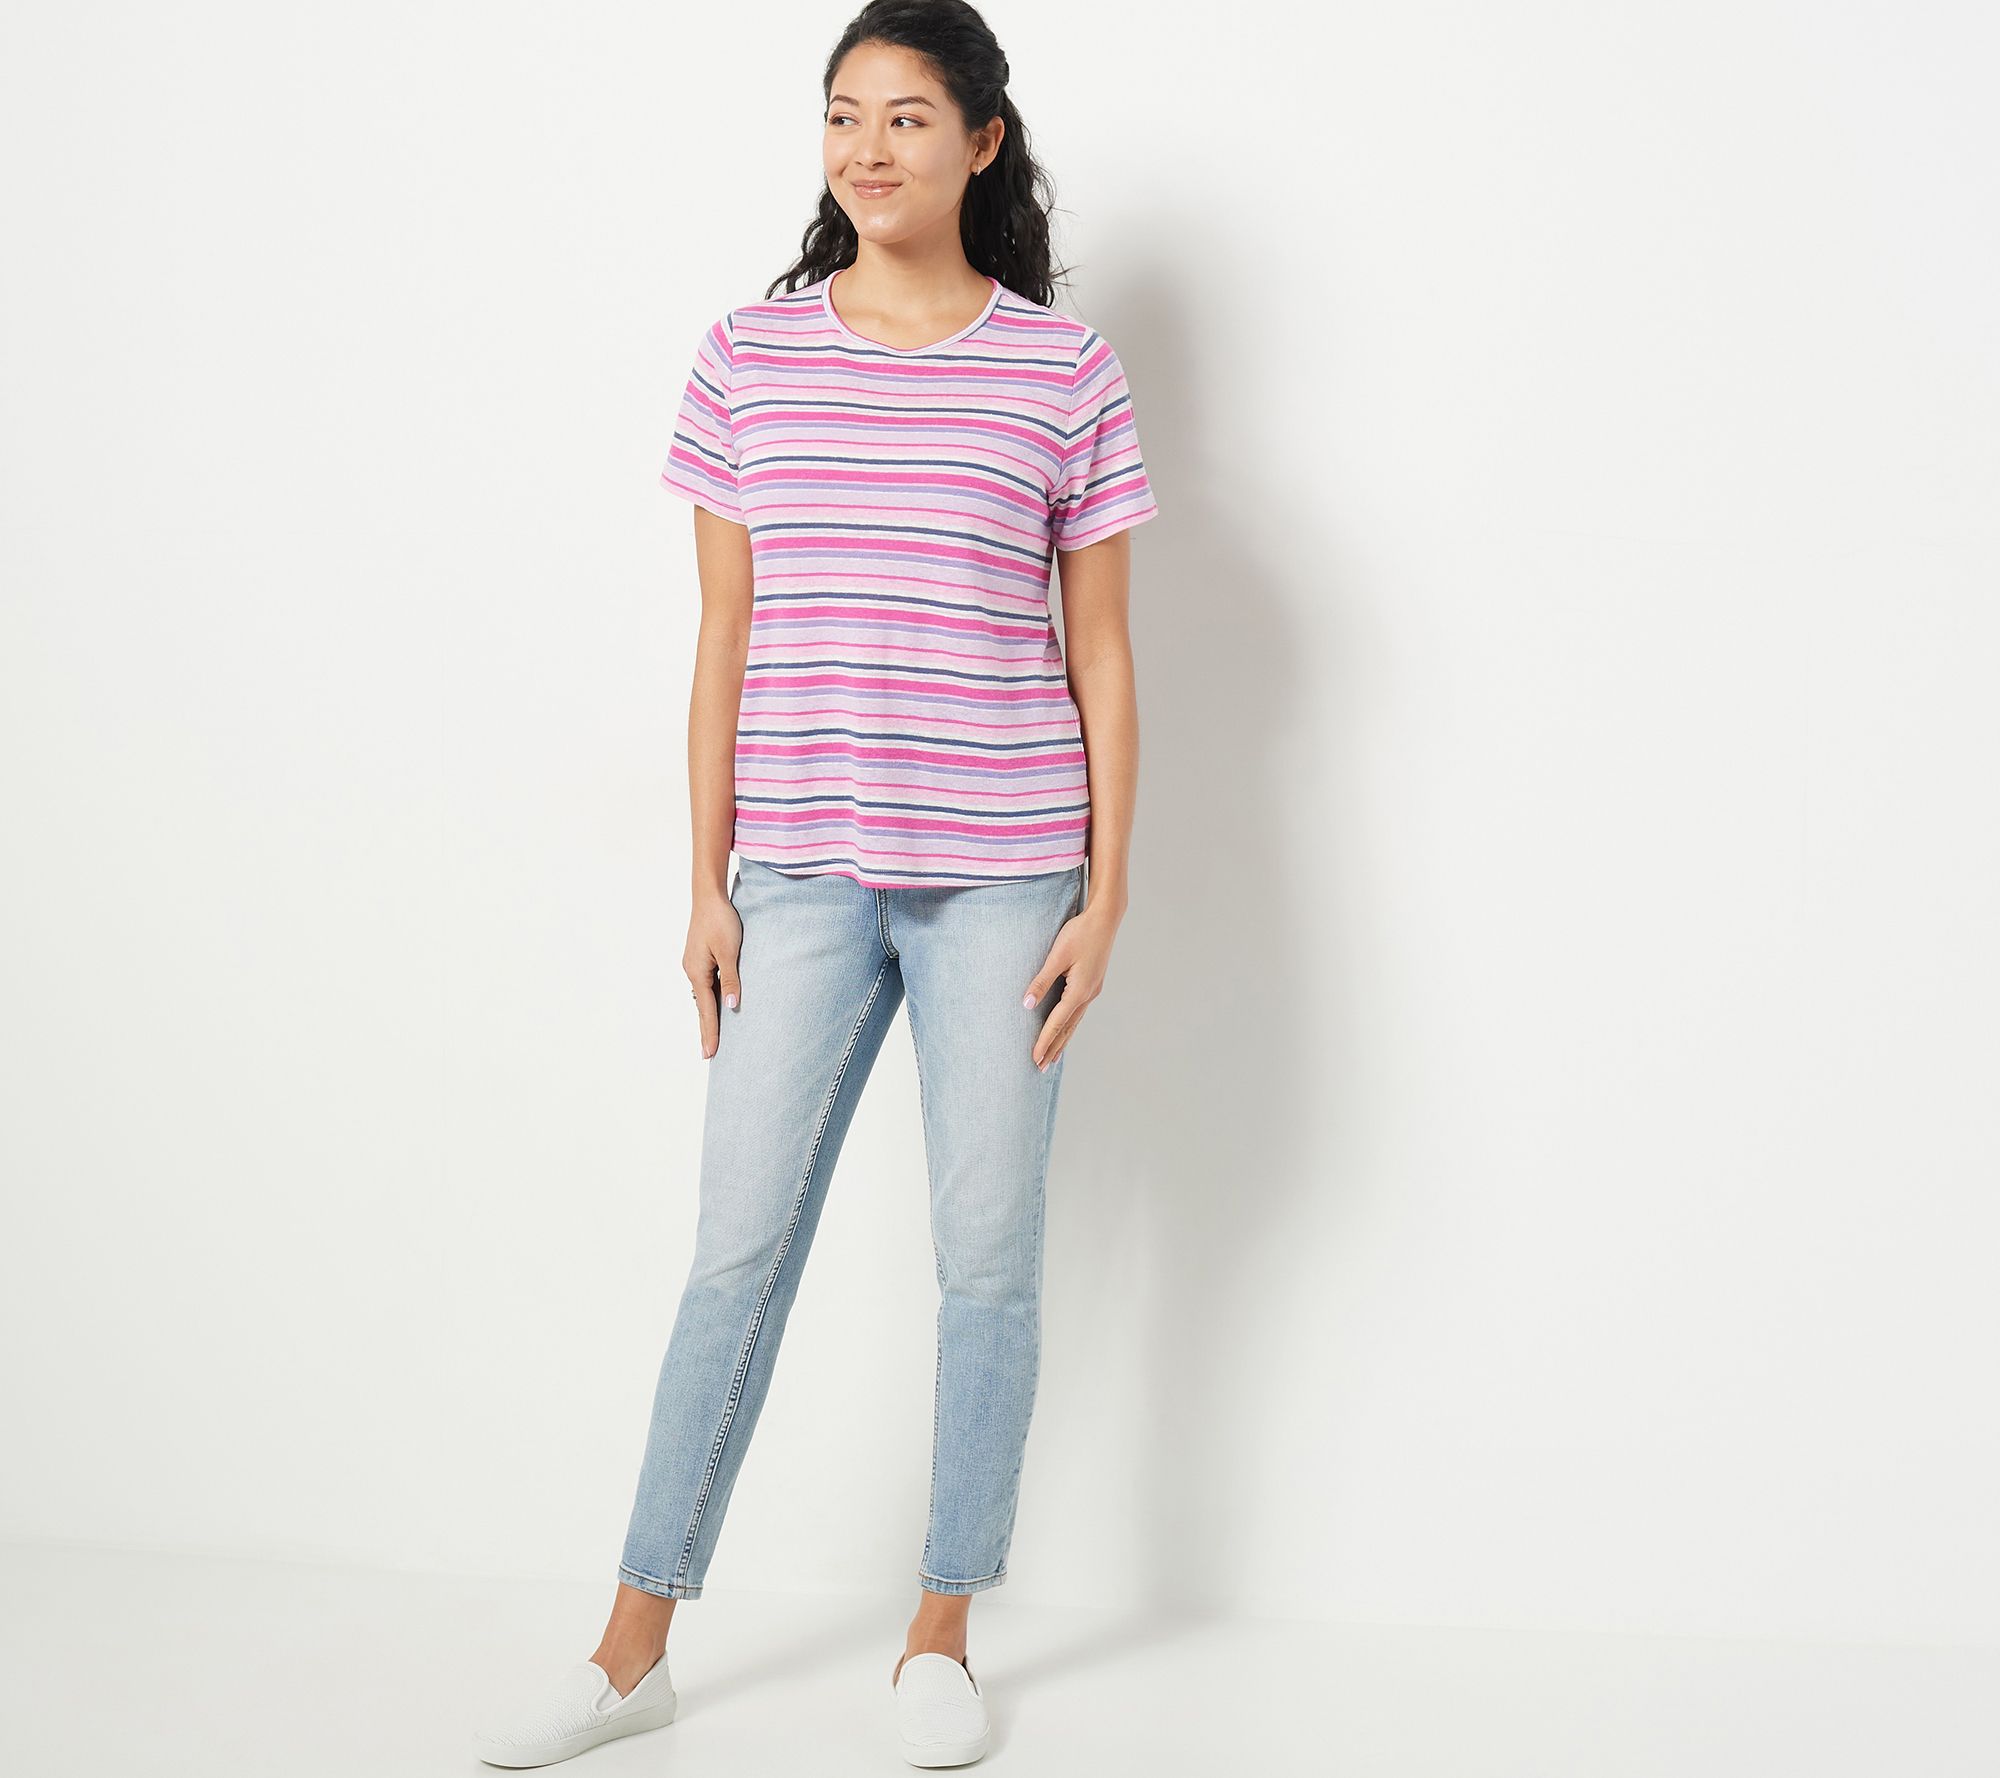 Candace Cameron Bure Summer Striped Linen Blend T-Shirt - QVC.com